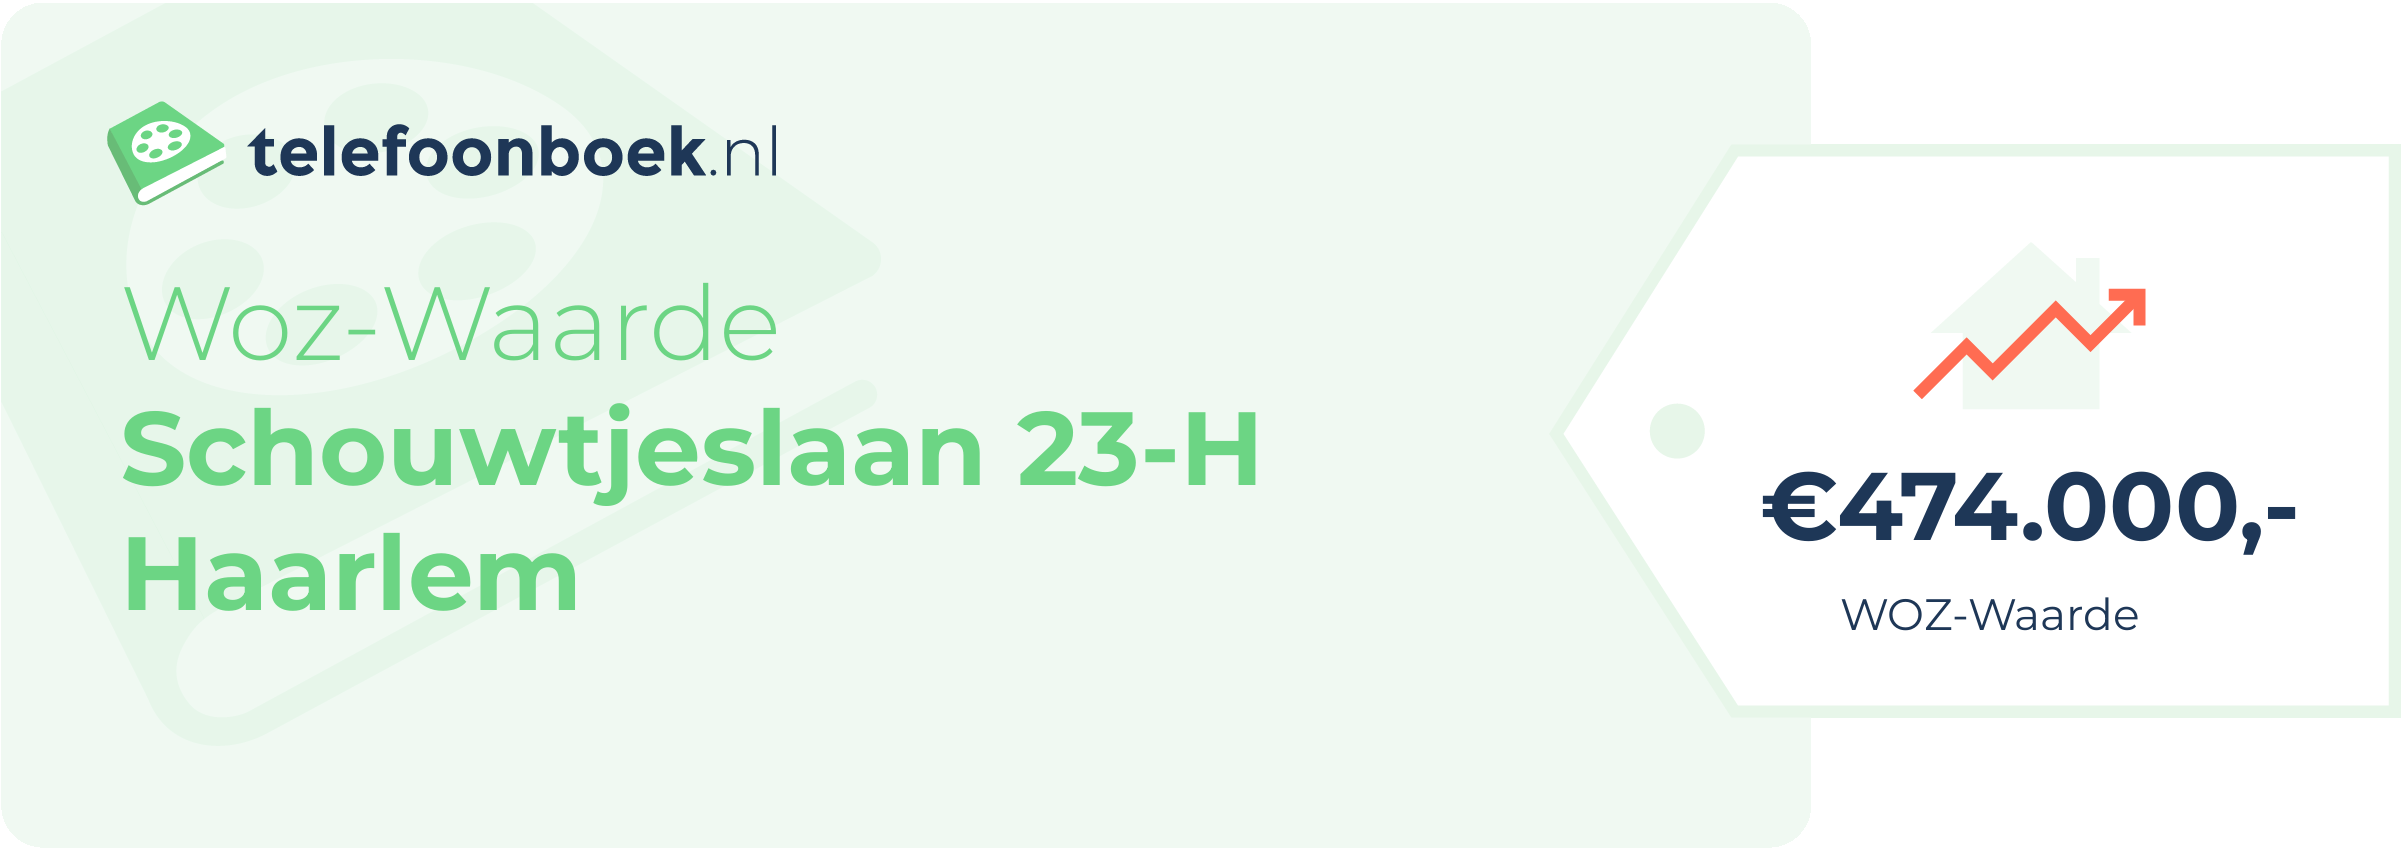 WOZ-waarde Schouwtjeslaan 23-H Haarlem